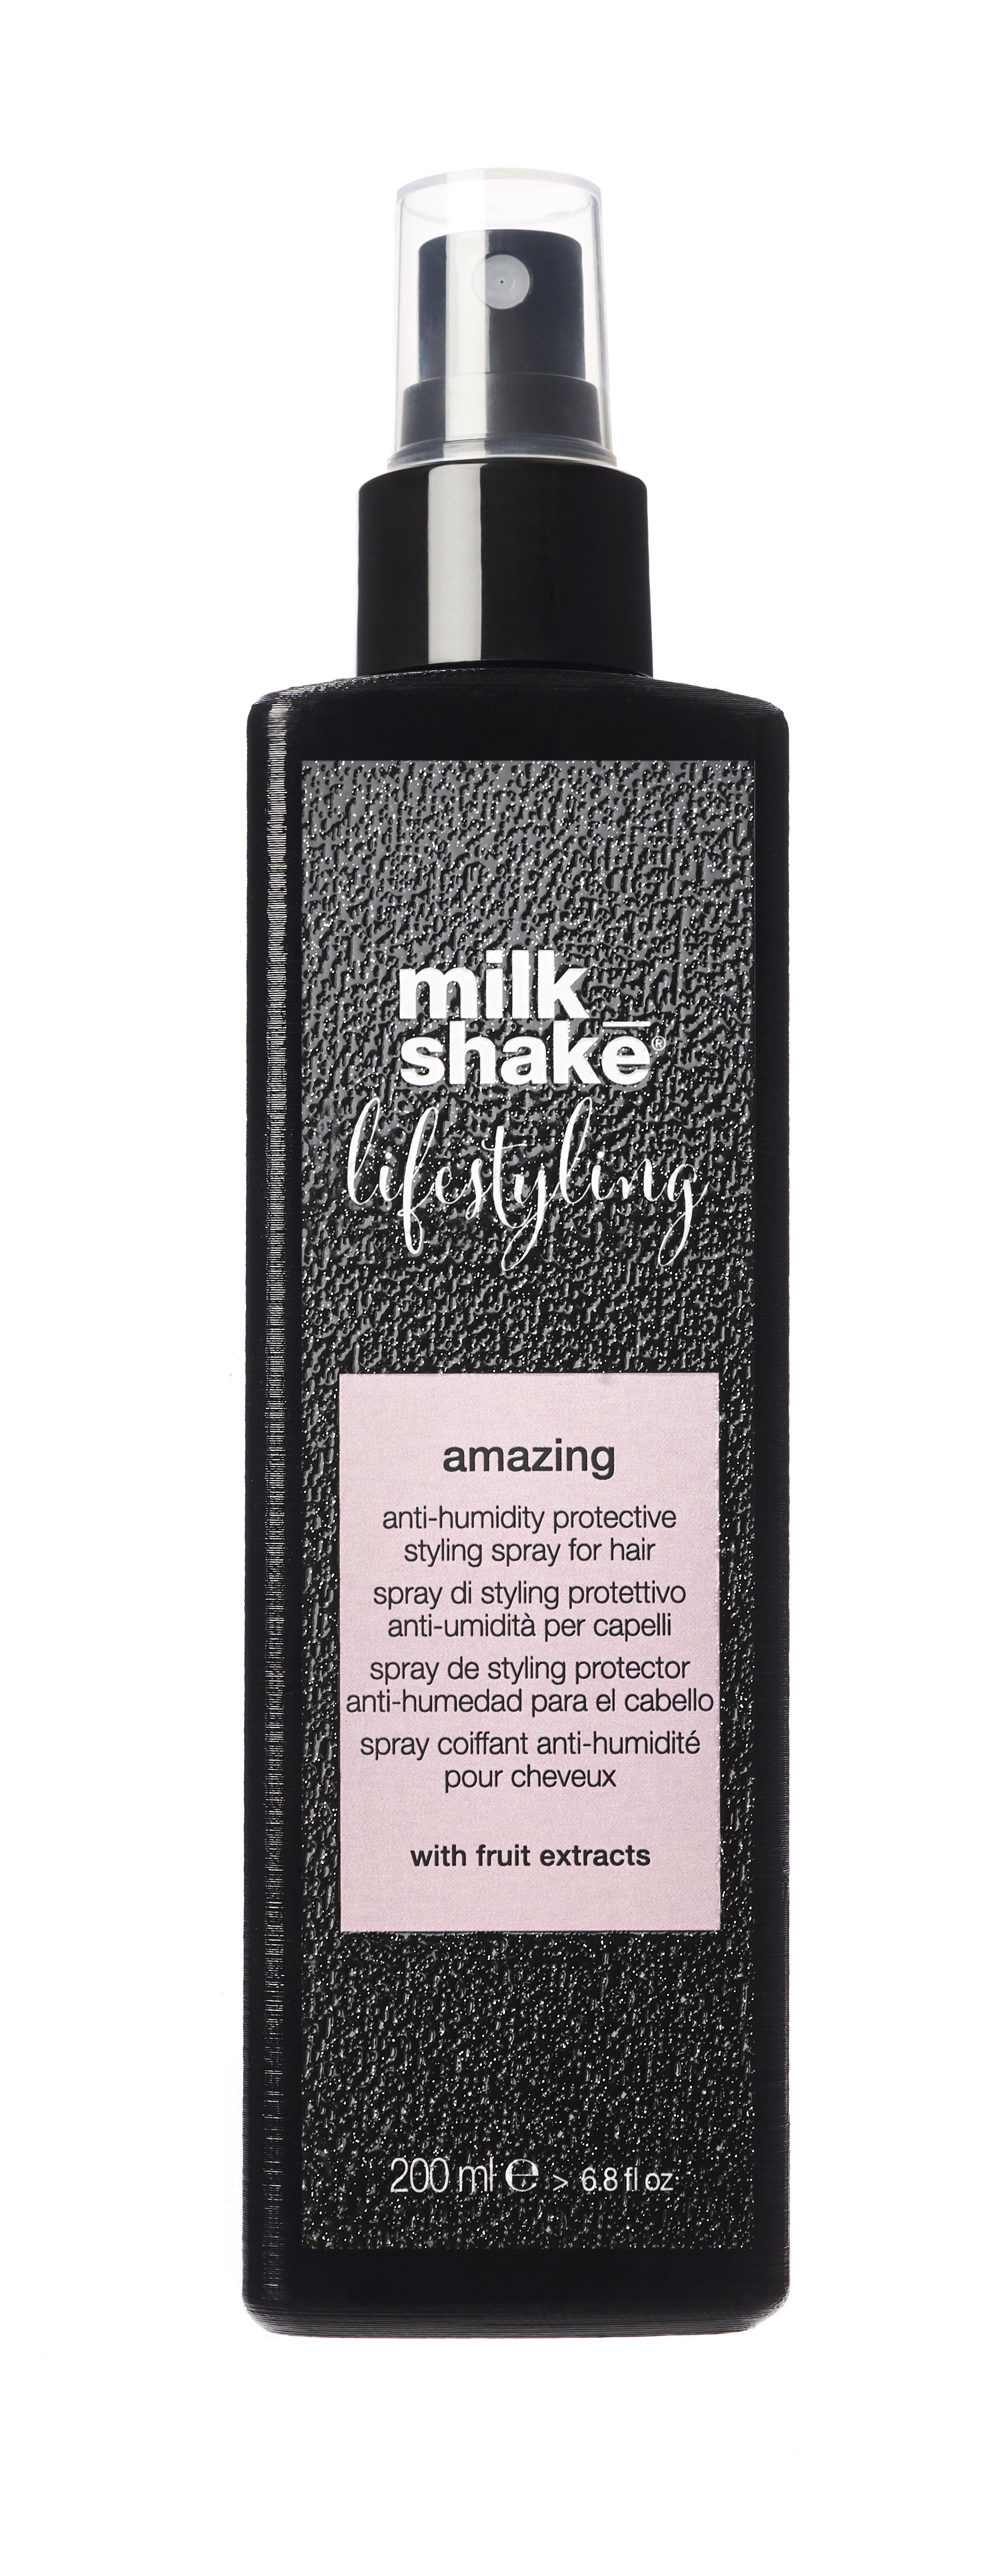 milk_shake - Lifestyling Amazing Styling Spray 200 ml